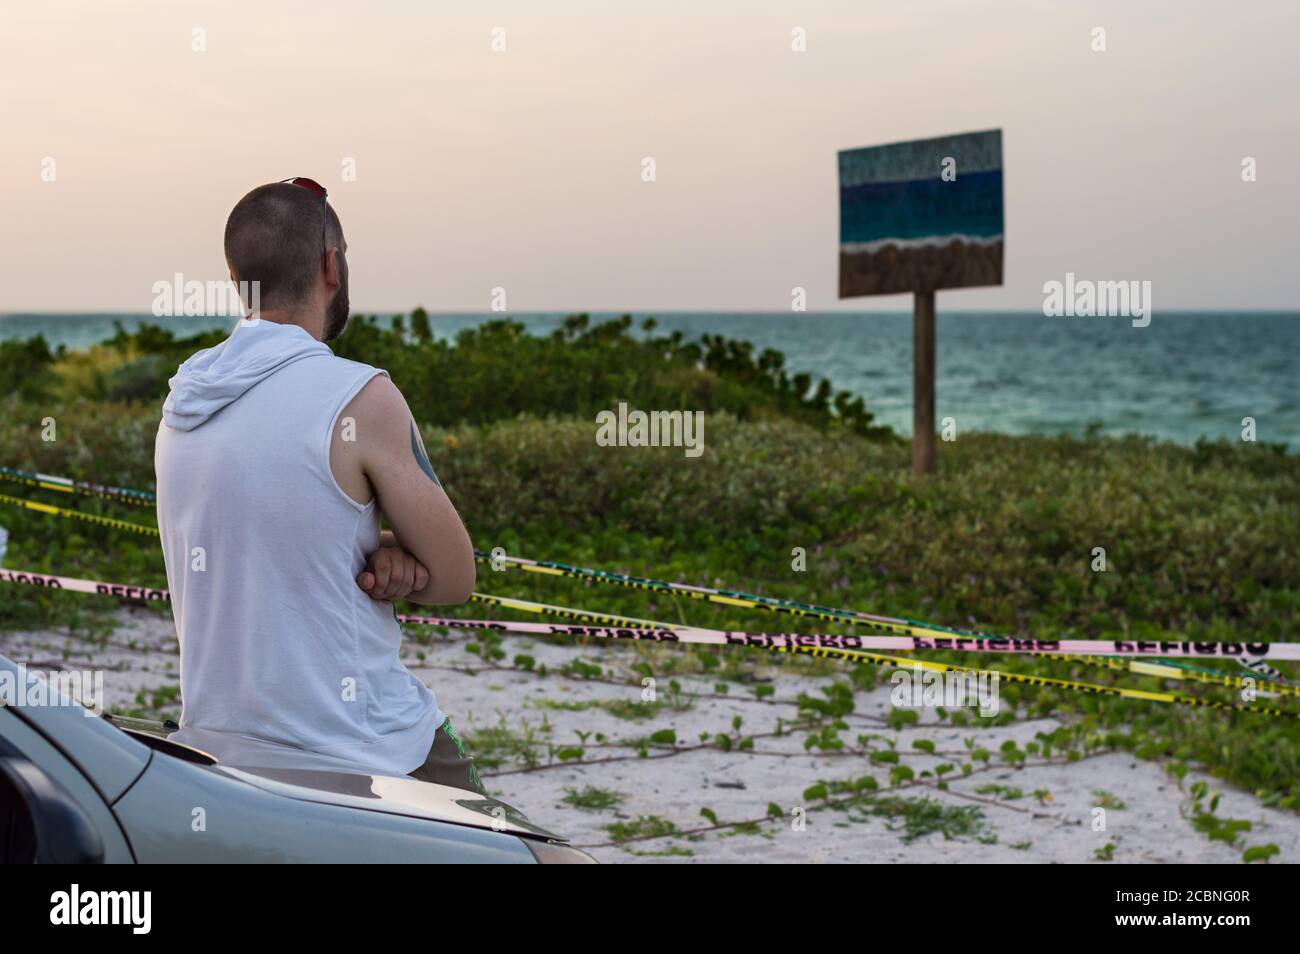 Covid Pandemic restrizioni in Messico. Spiagge chiuse a causa di divaricamenti sociali alle spiagge di Yucatan, Messico. Foto Stock